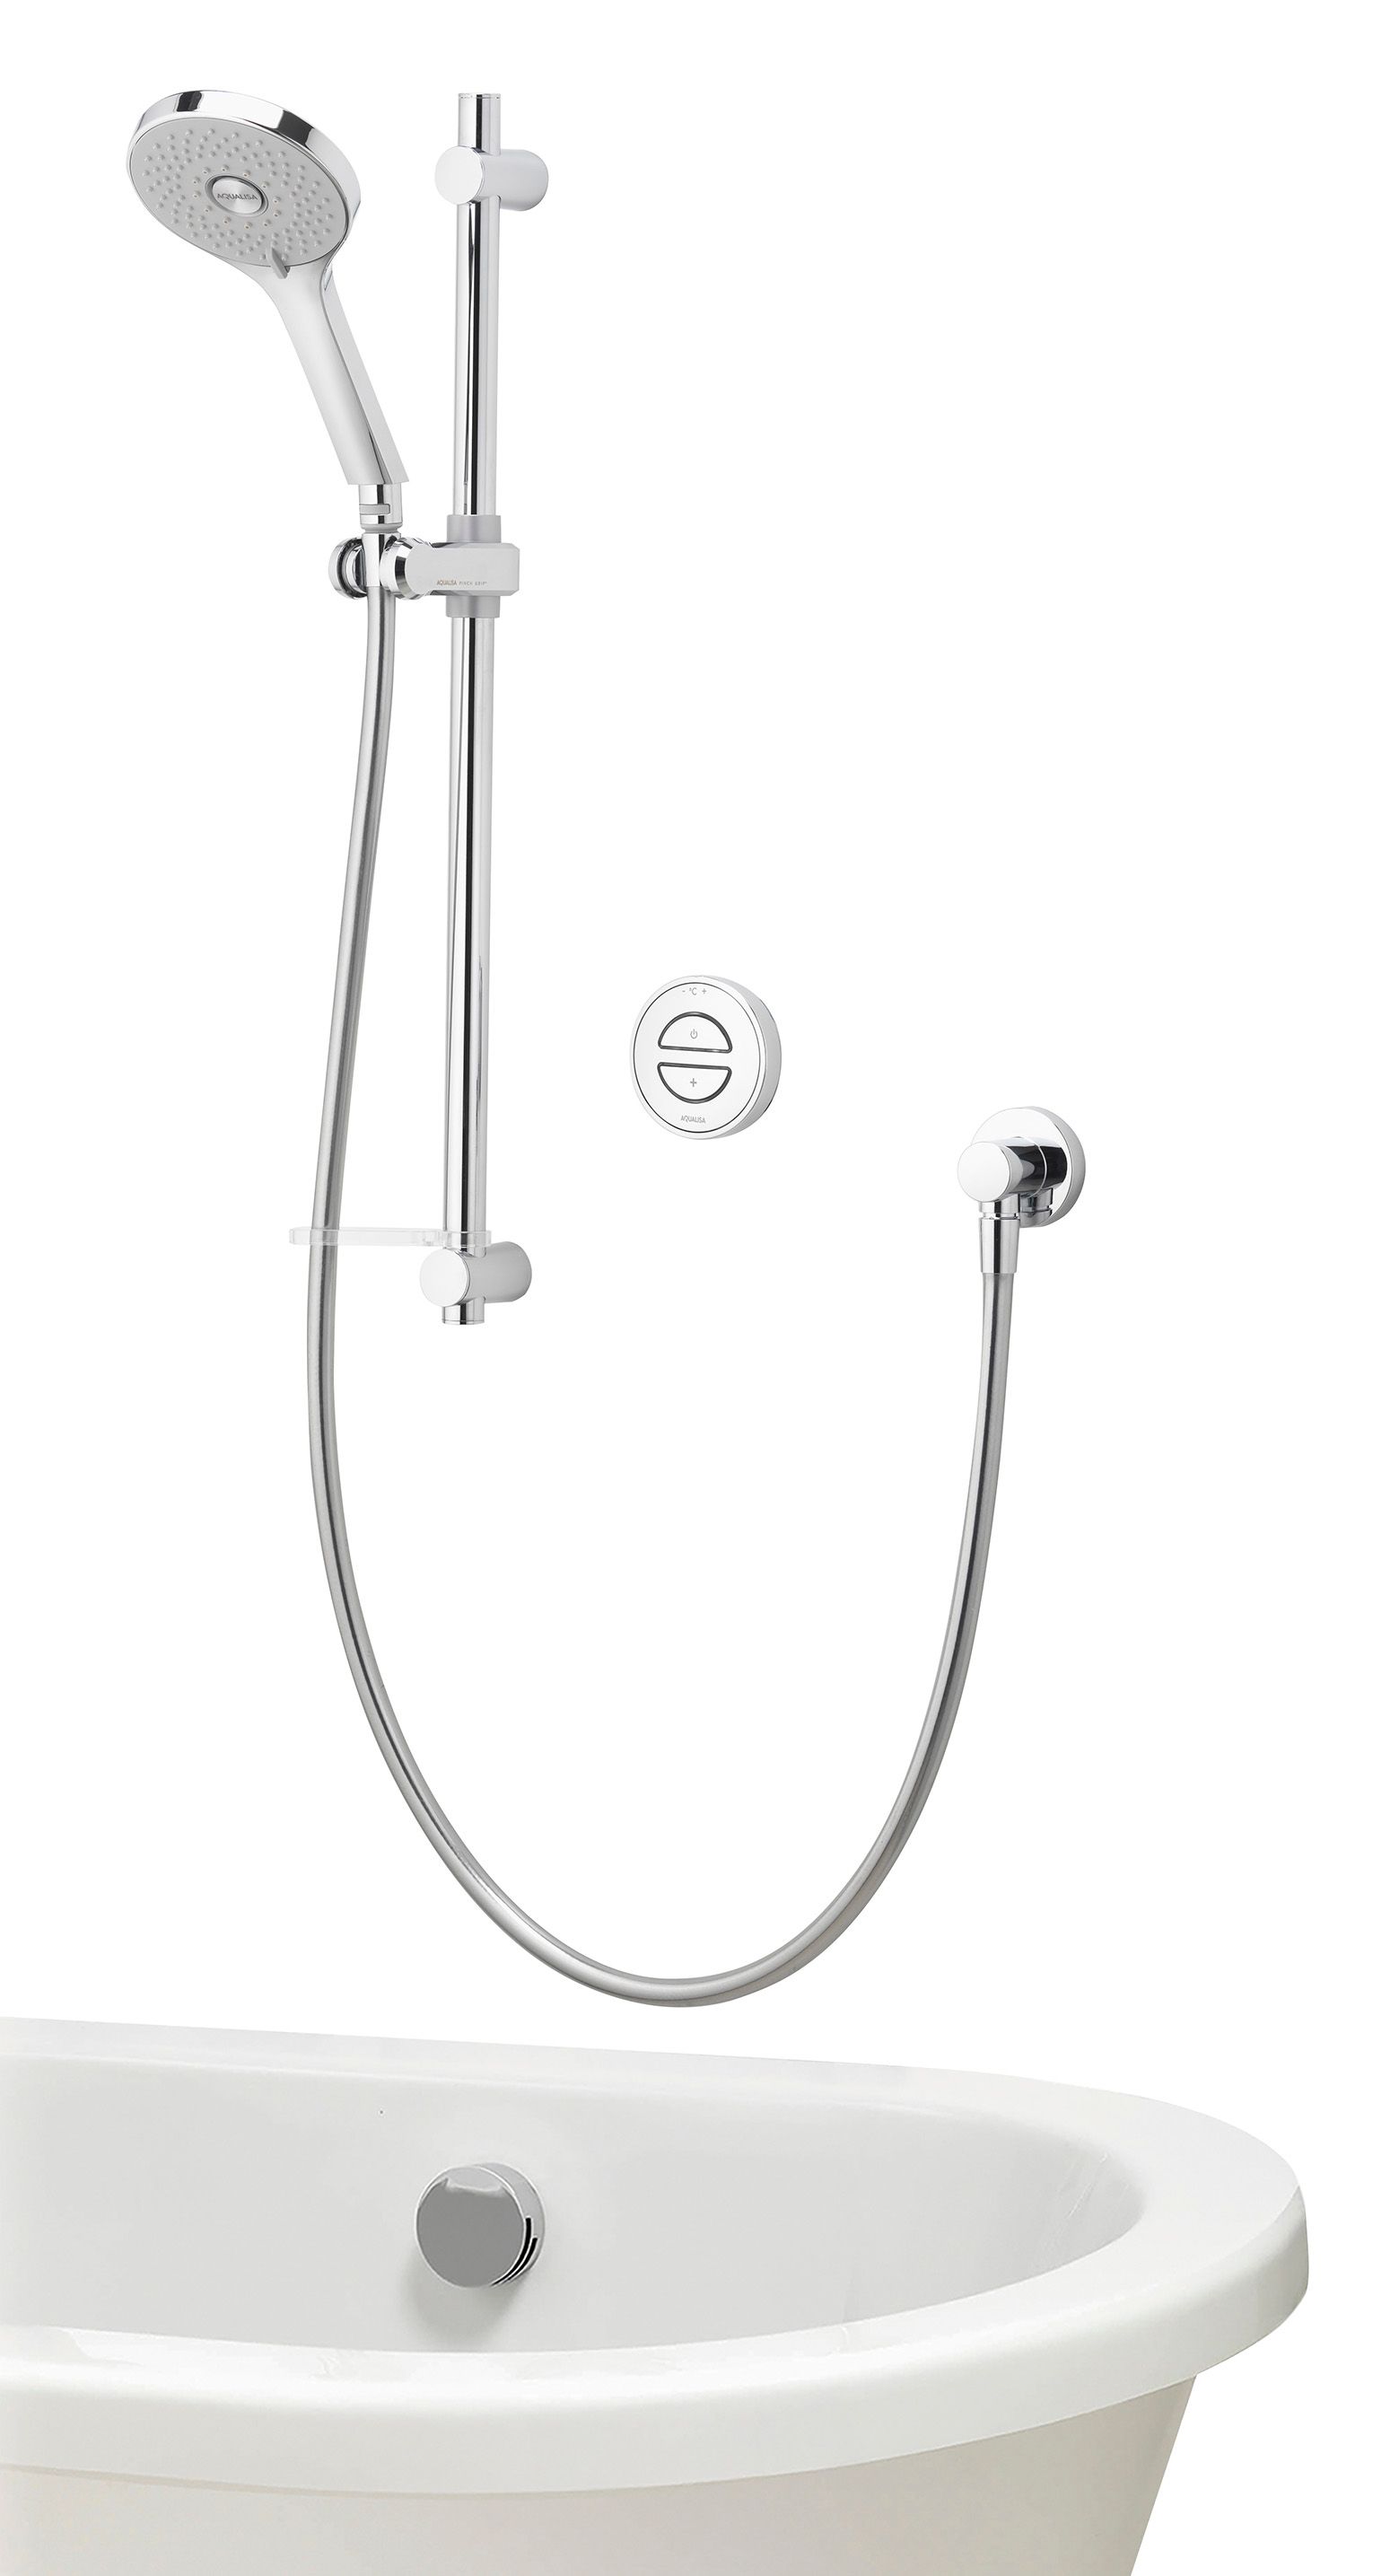 Aqualisa Unity Q Smart Concealed High Pressure Combi Shower with Adjustable Shower Head & Bath Filler